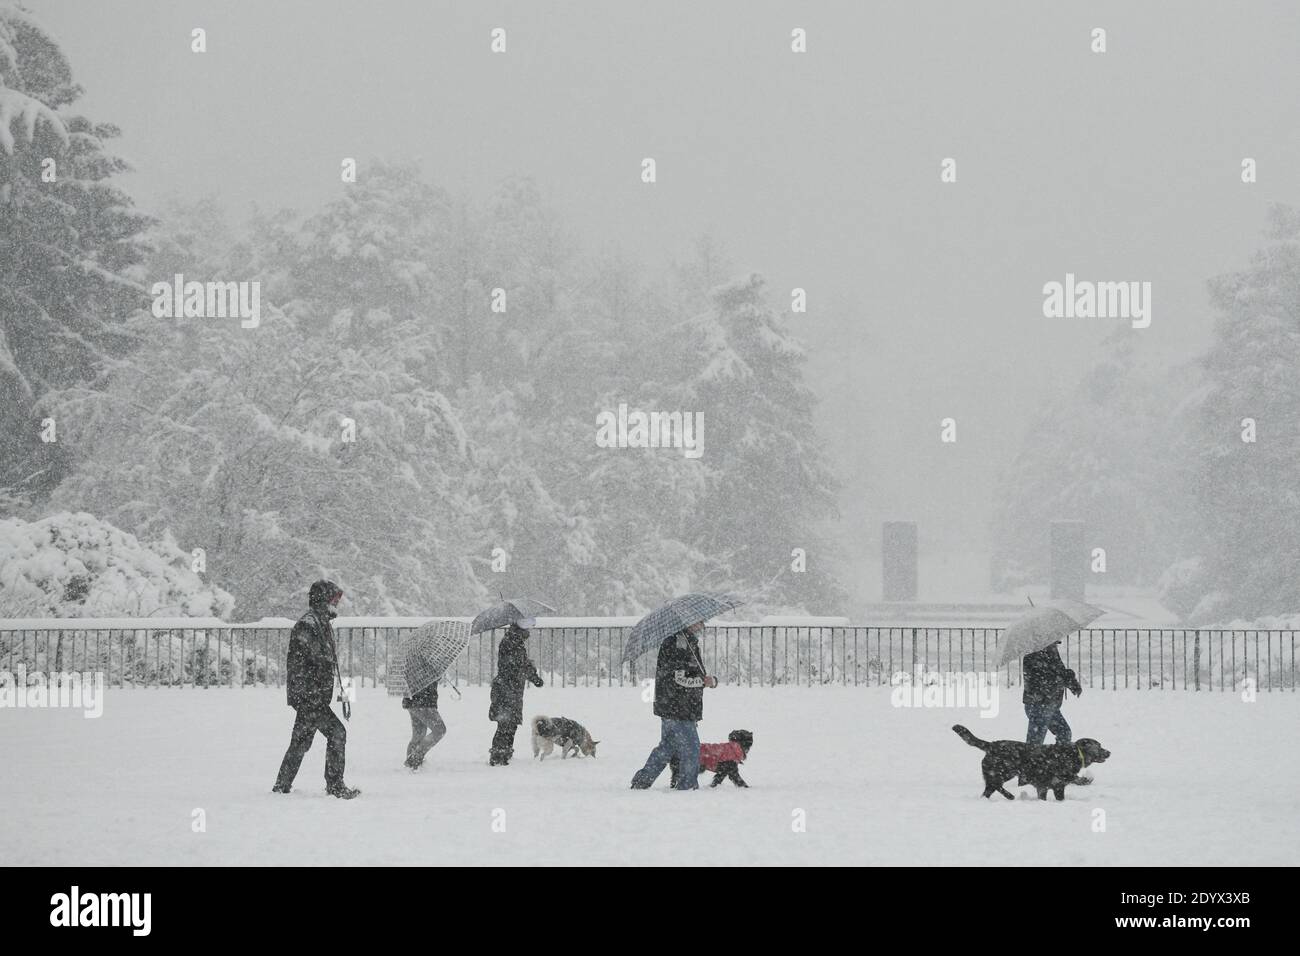 Milan, Italie. 28 décembre 2020. Les gens se promènent à Parco Sempione comme une grosse chute de neige à Milan, Italie le 28 décembre 2020 crédit: Piero Cruciatti/Alay Live News Banque D'Images